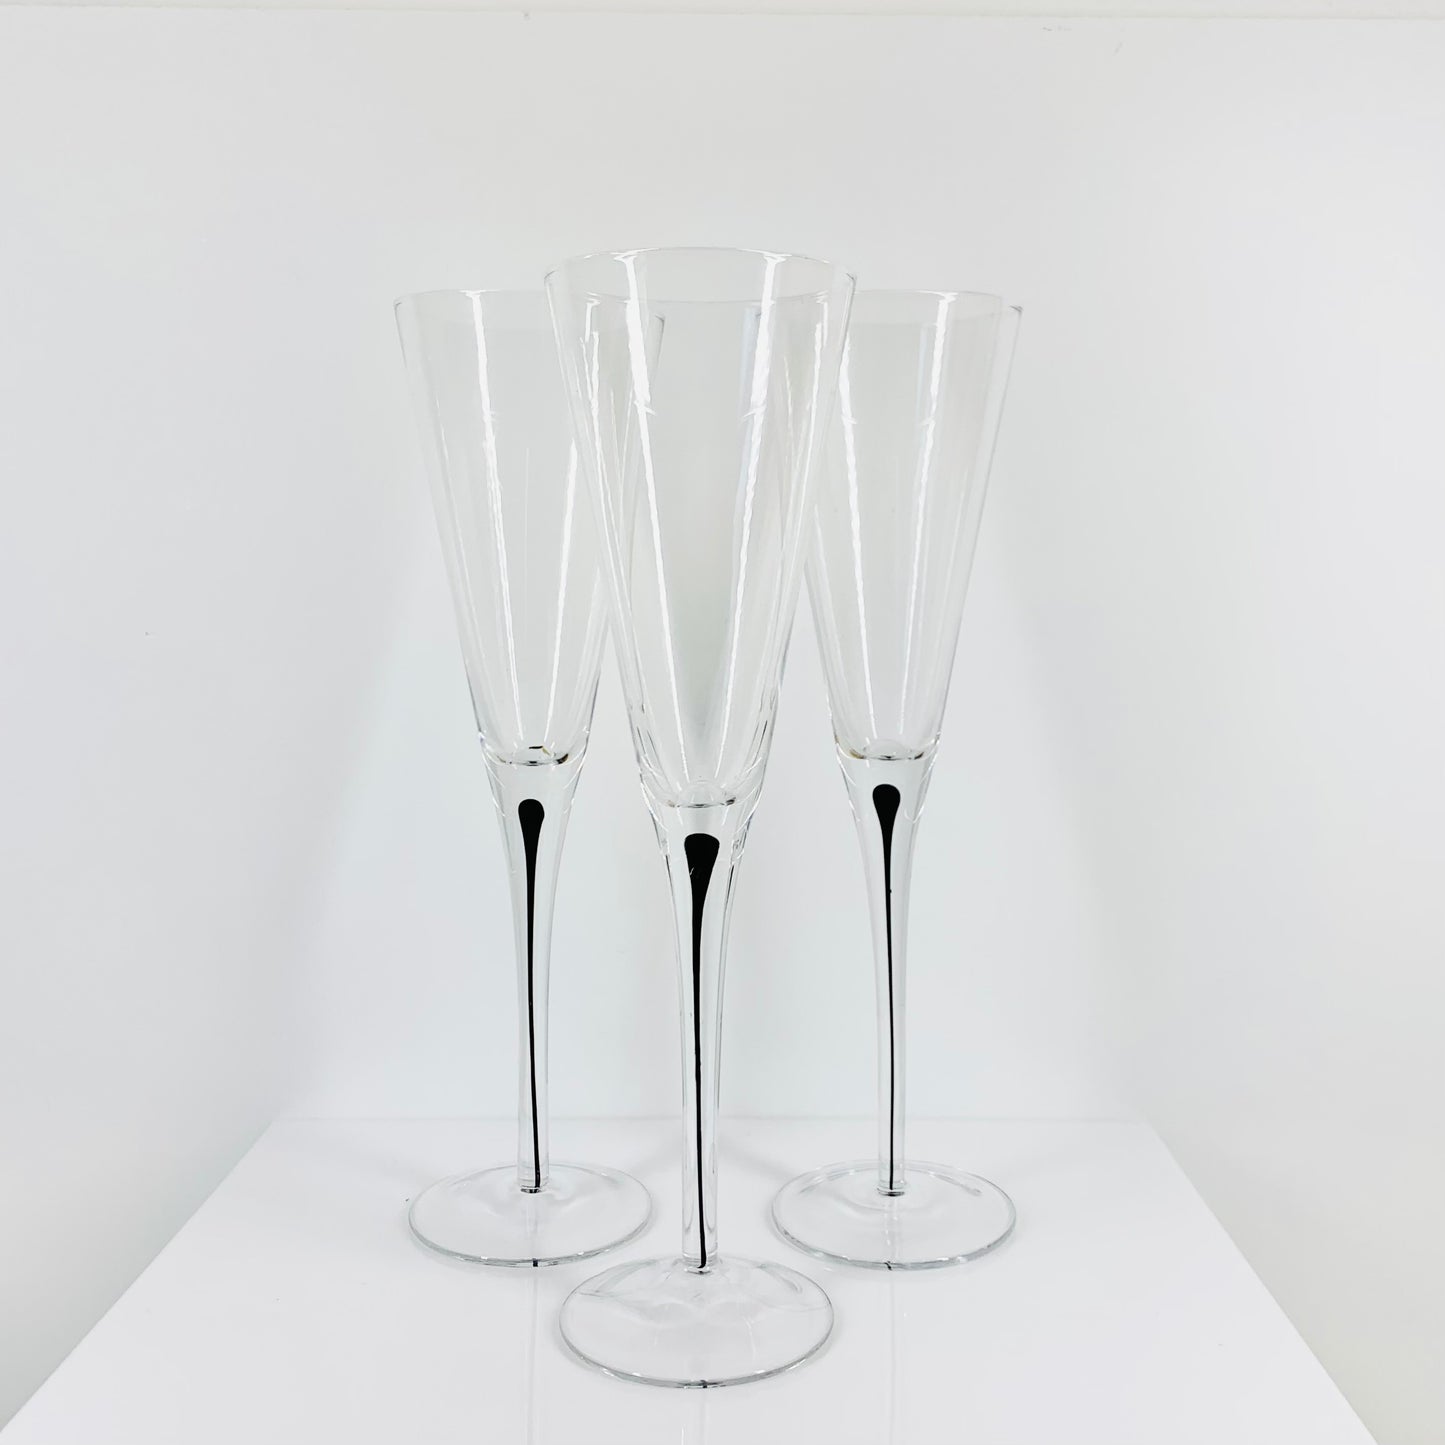 1980s Kosta Boda art glass champagne flutes in the Intermezzo series